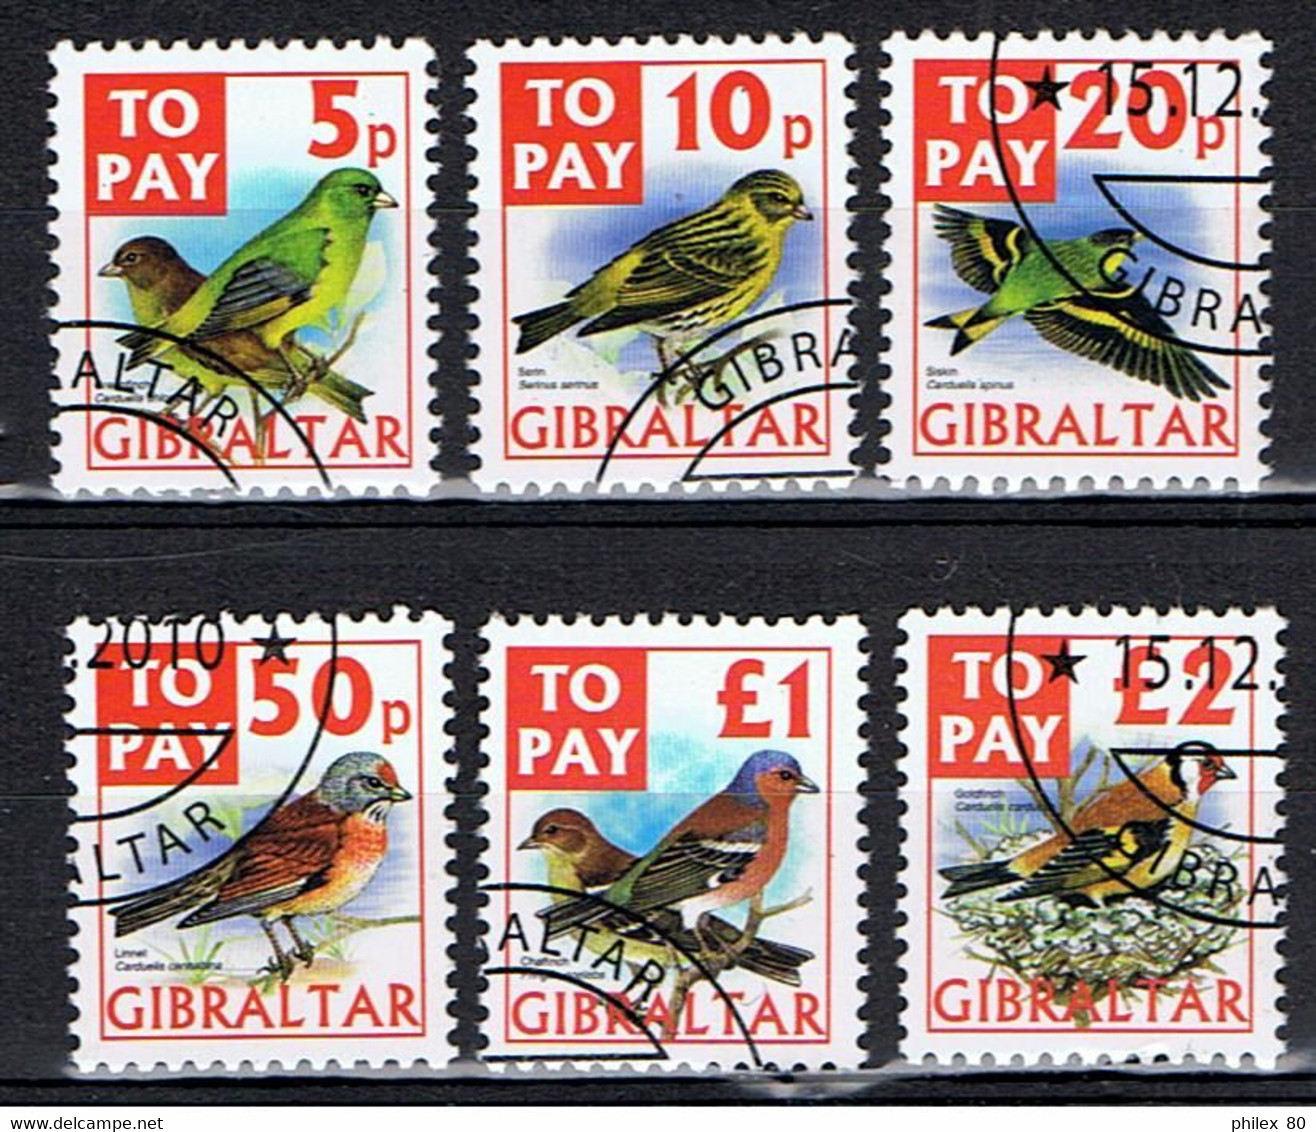 Gibraltar / 2002 / Timbres-taxe / Oiseaux / YT N° 26 à 31 Oblitérés / Série Complète - Gibraltar